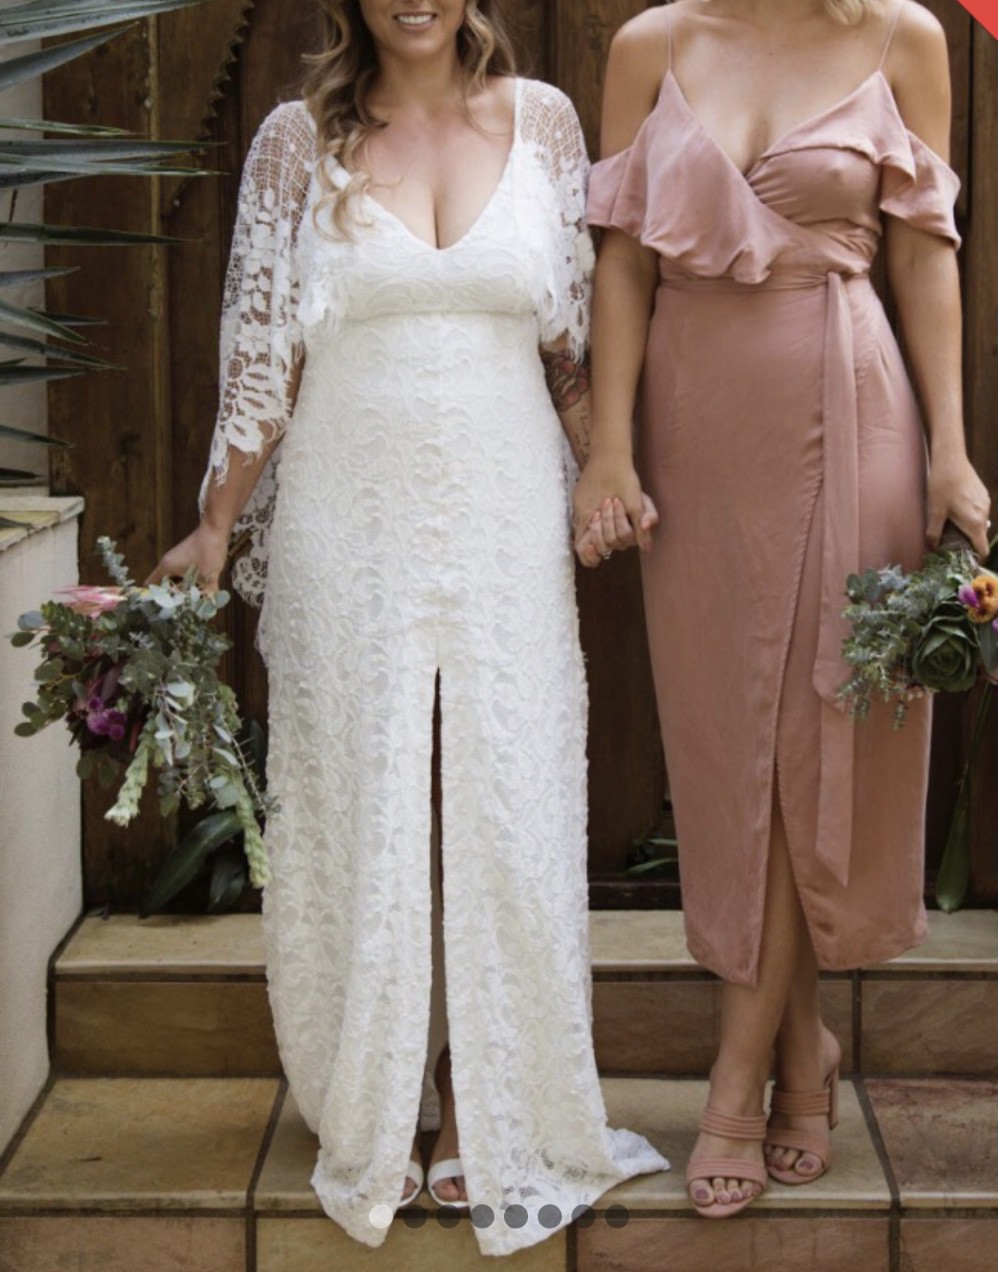 Verdelle 2. Gown, Lace Wedding Dress